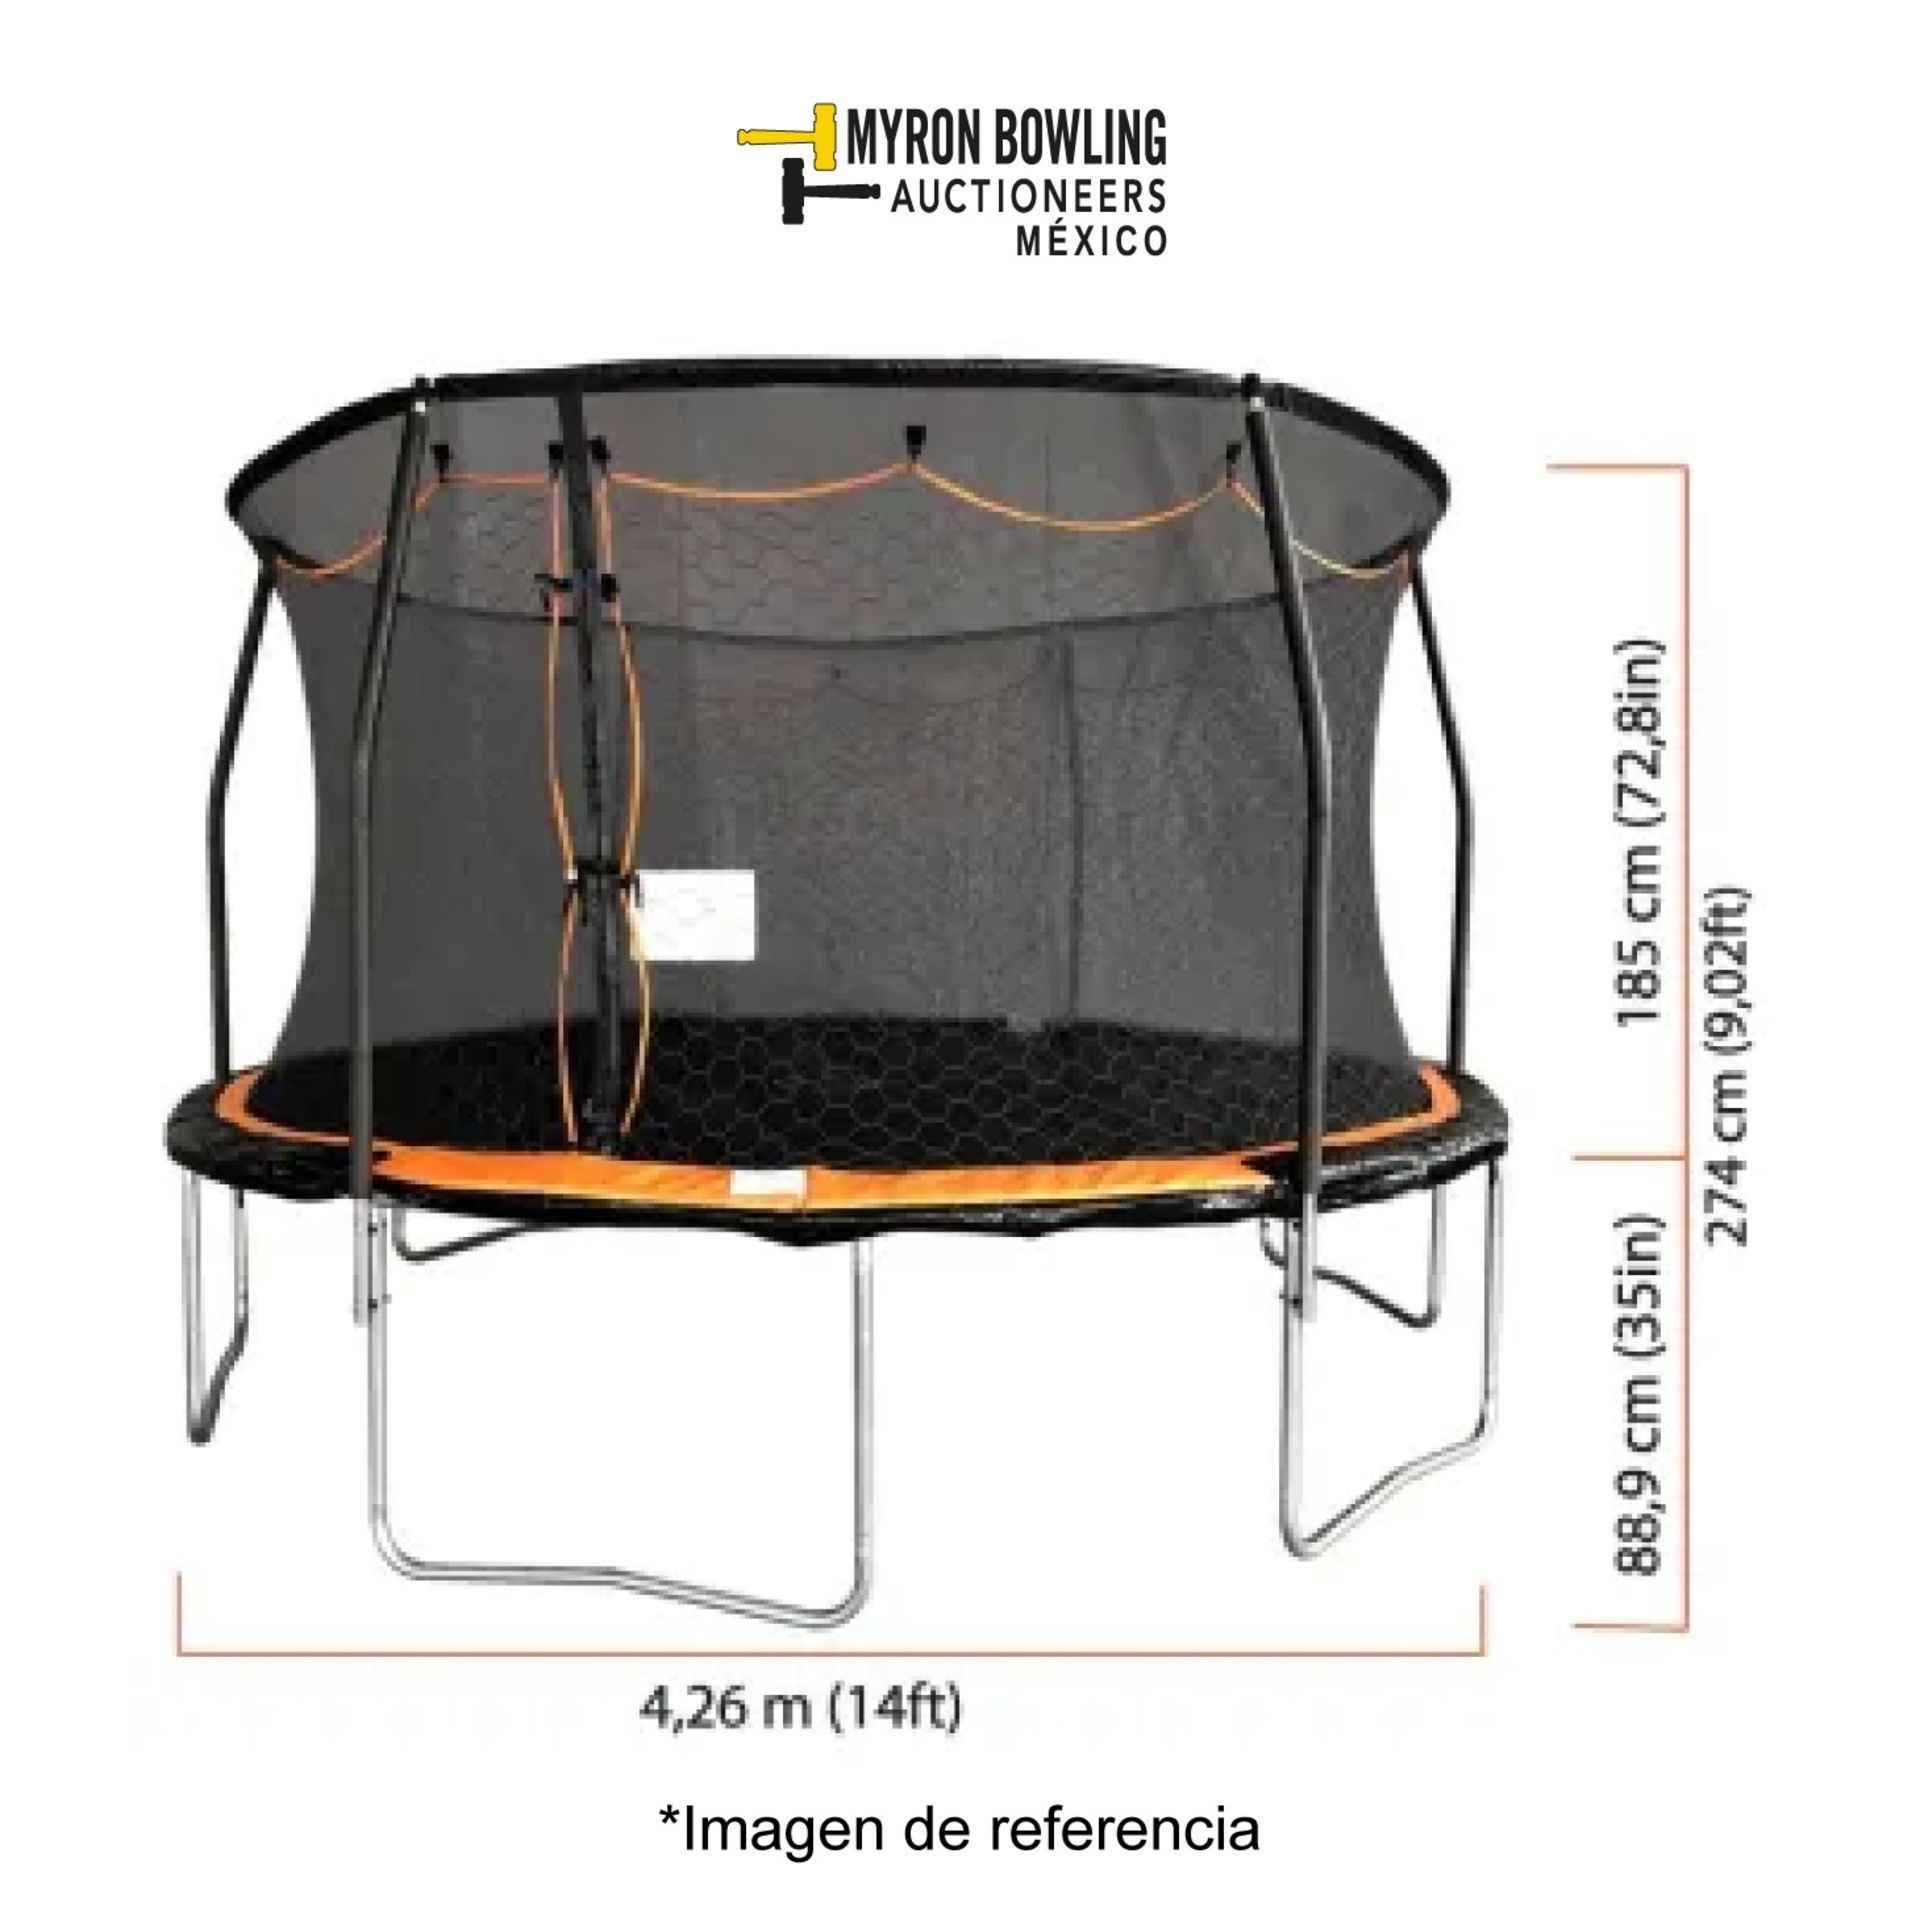 (NUEVO) Lote de 2 trampolines contiene: 1 trampolín de 2.13 m MYFIRST TRAMPOLINE; 1 trampolín de 14